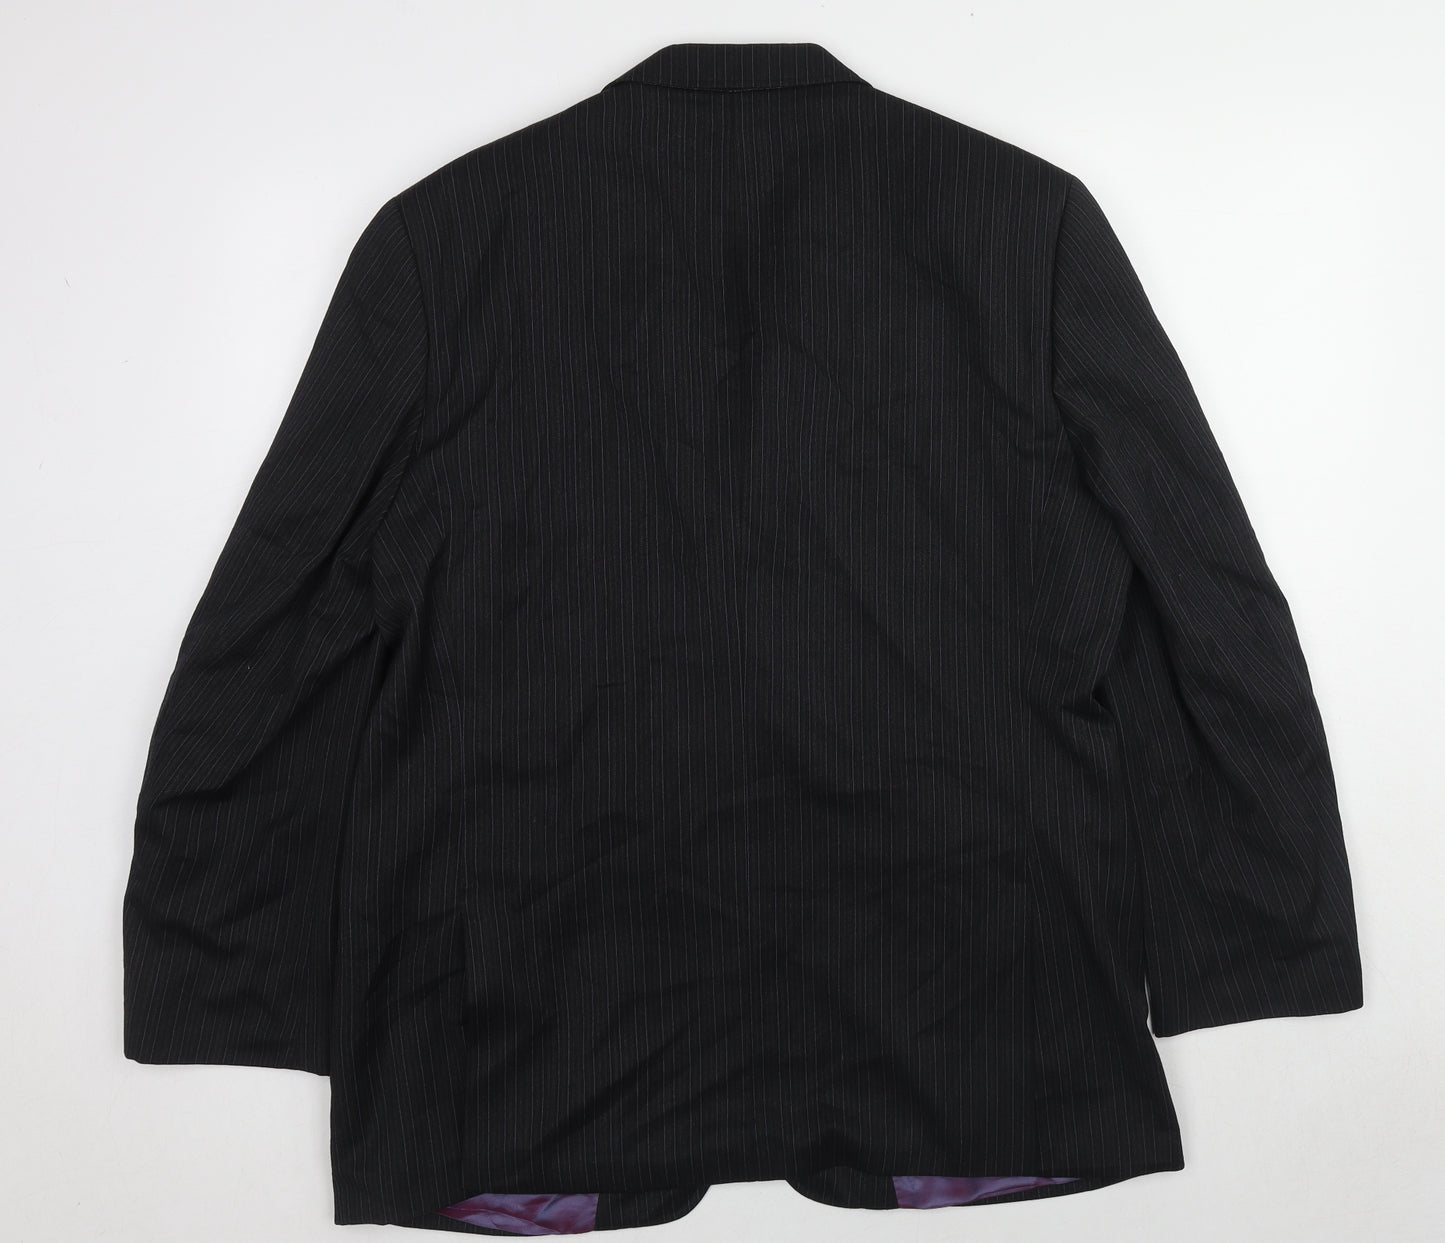 Ted Baker Mens Black Striped Wool Jacket Suit Jacket Size 42 Regular